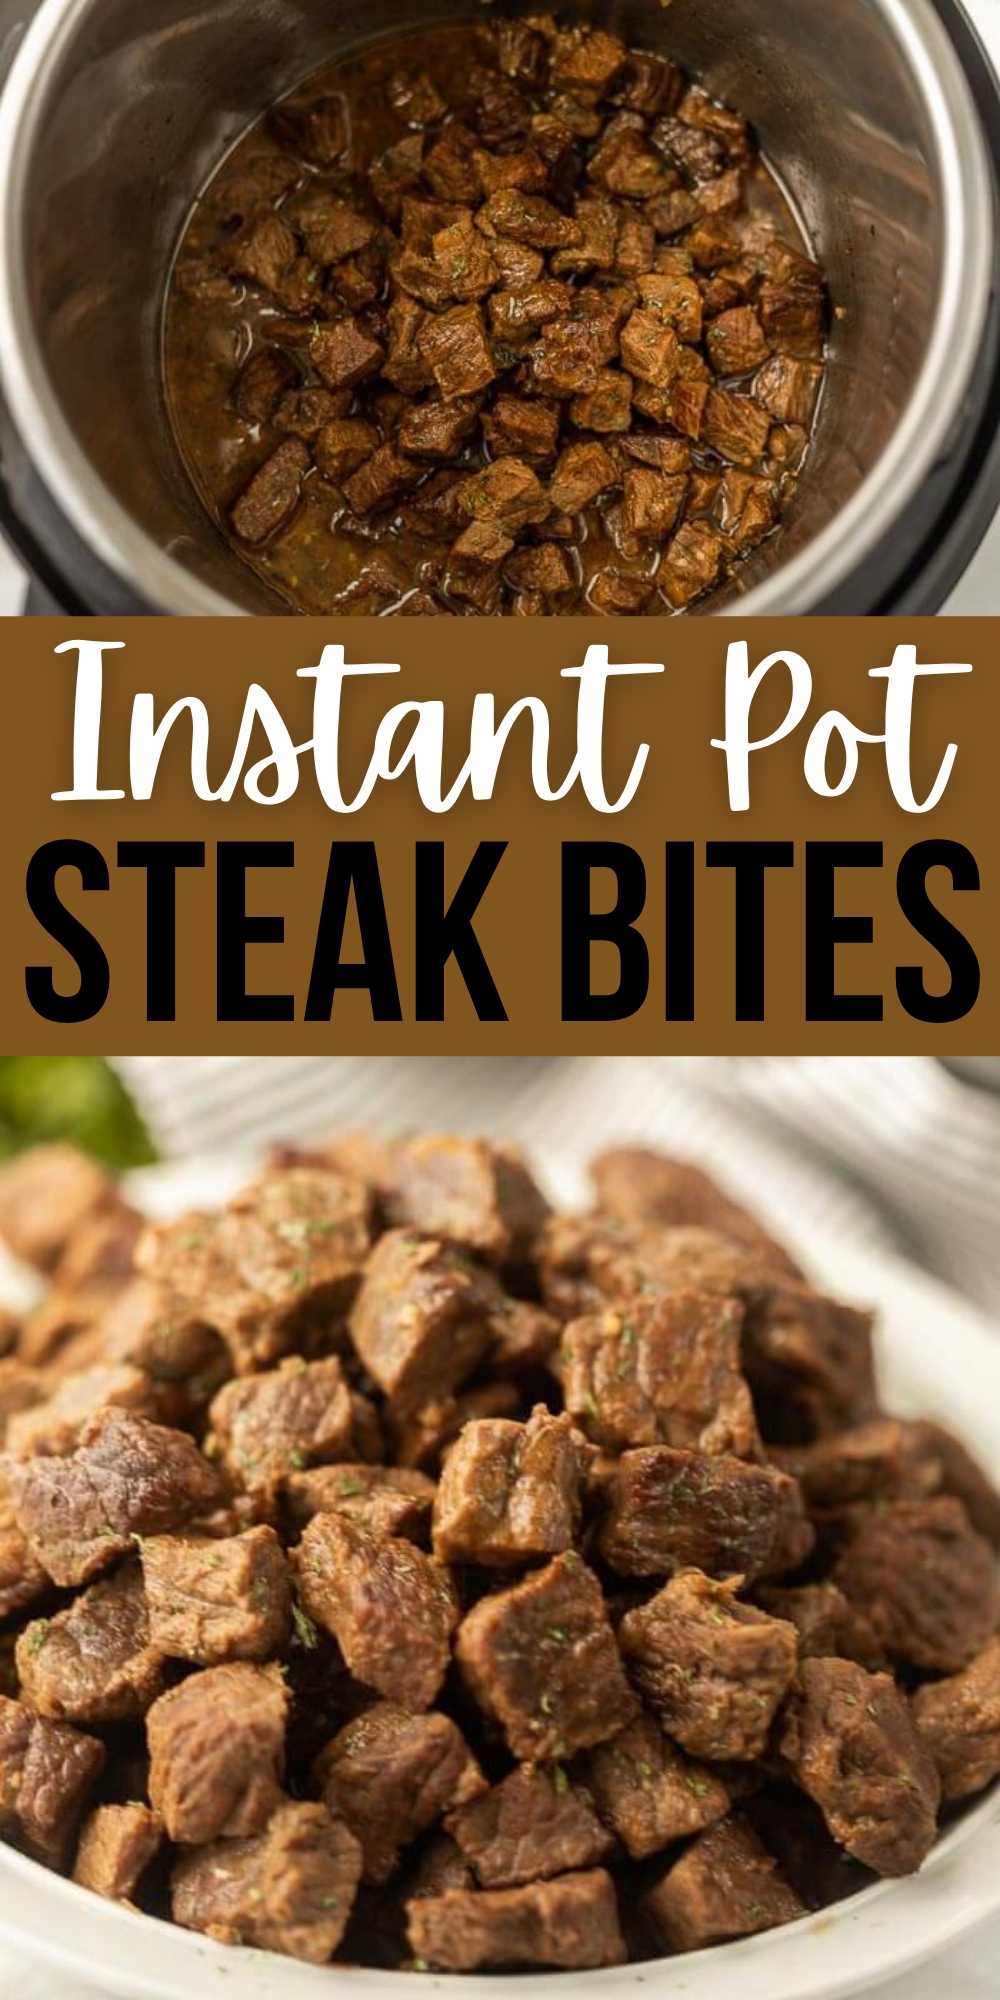 https://www.eatingonadime.com/wp-content/uploads/2021/10/Instant-Pot-Steak-Bites-3.jpg